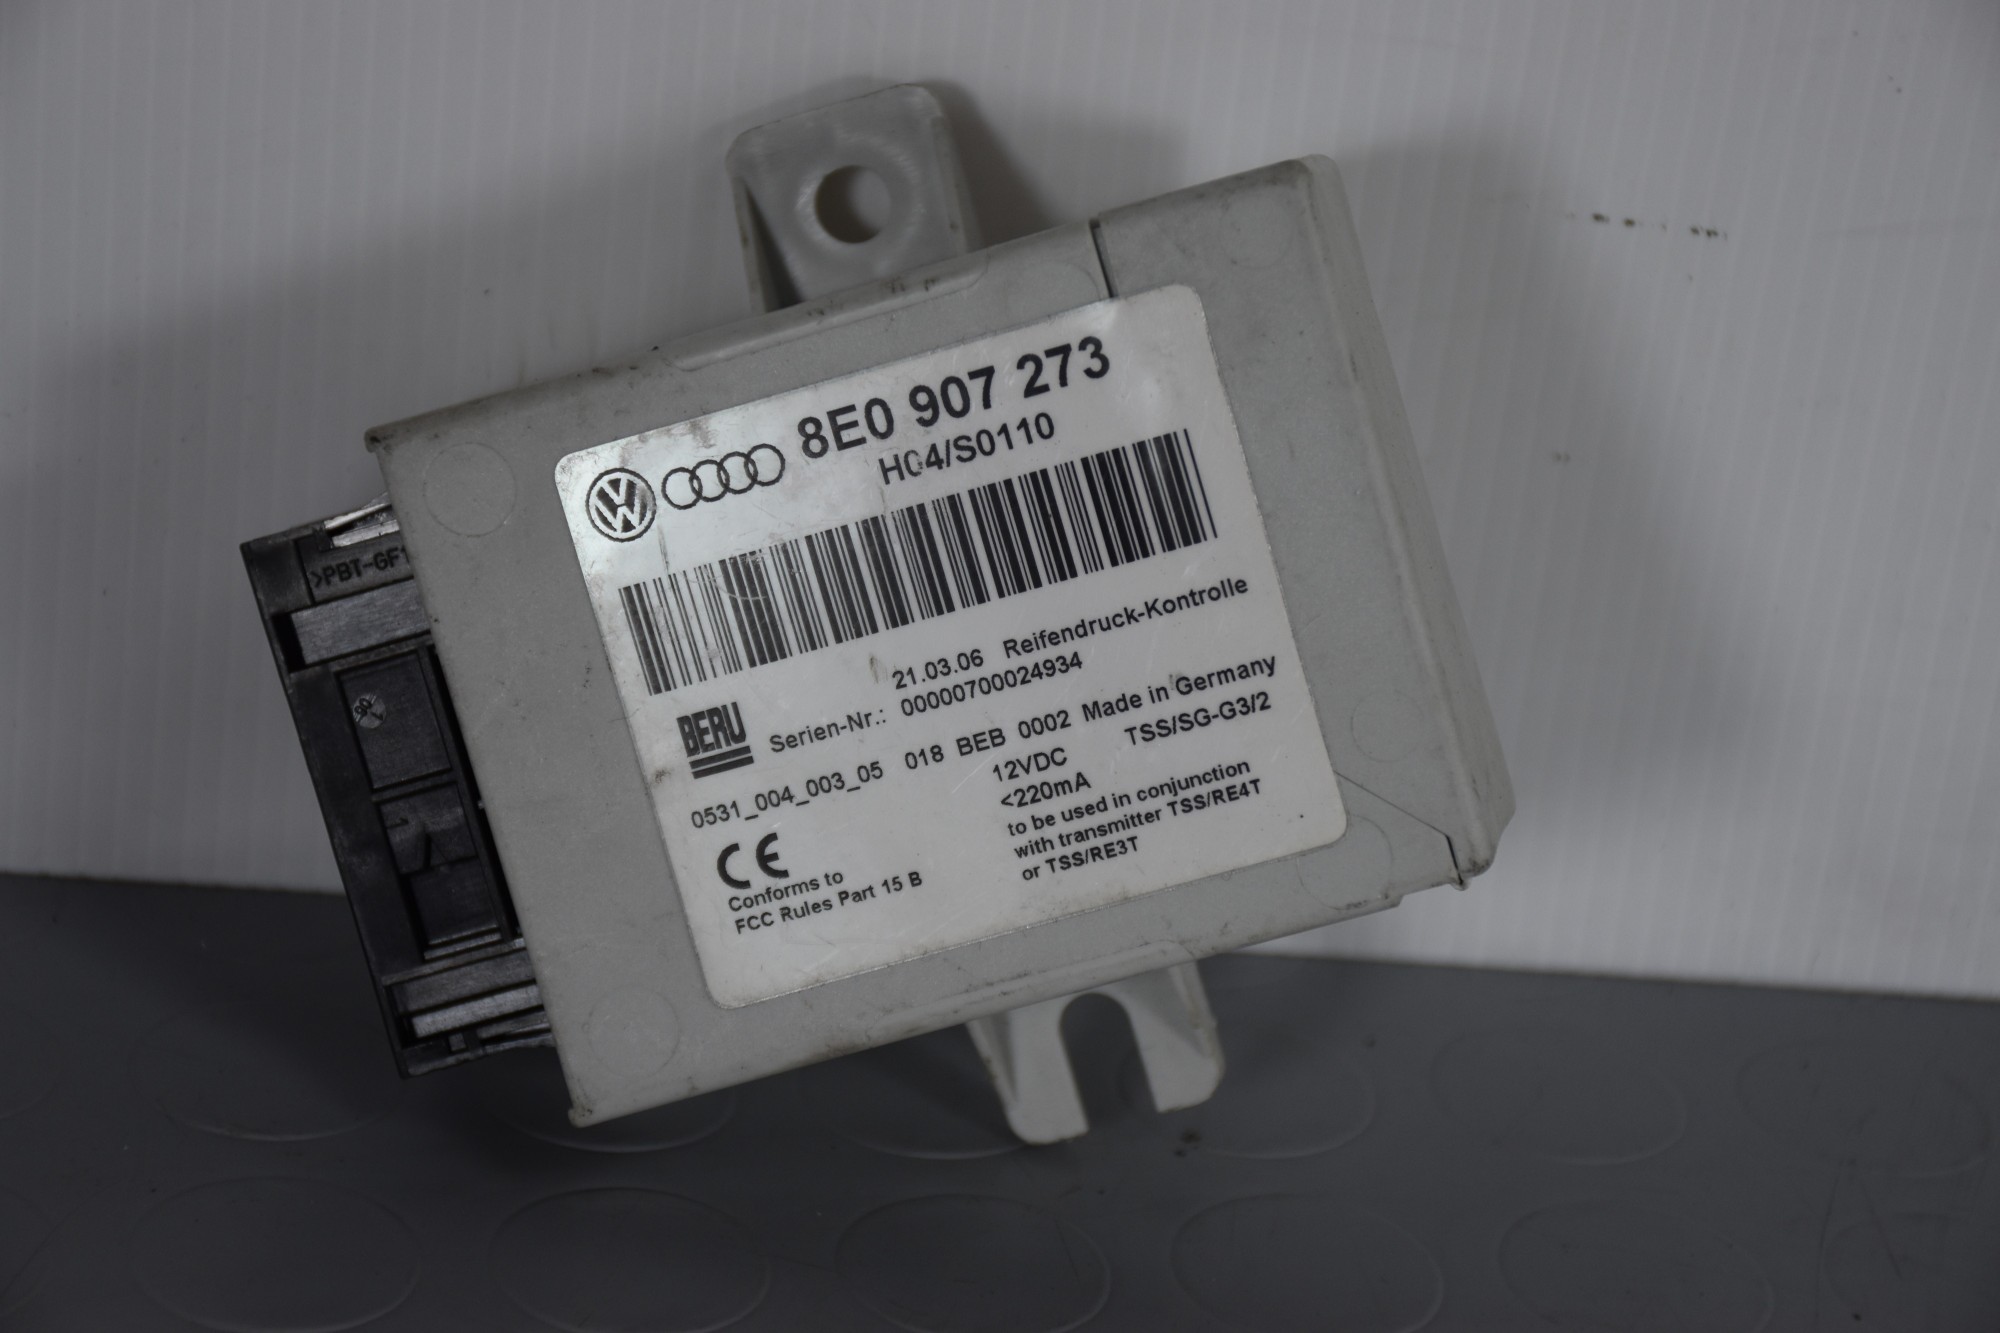 Centralina controllo pressione pneumatici Audi A4 Dal 2000 al 2006 Cod 8E0907273  1626253724433